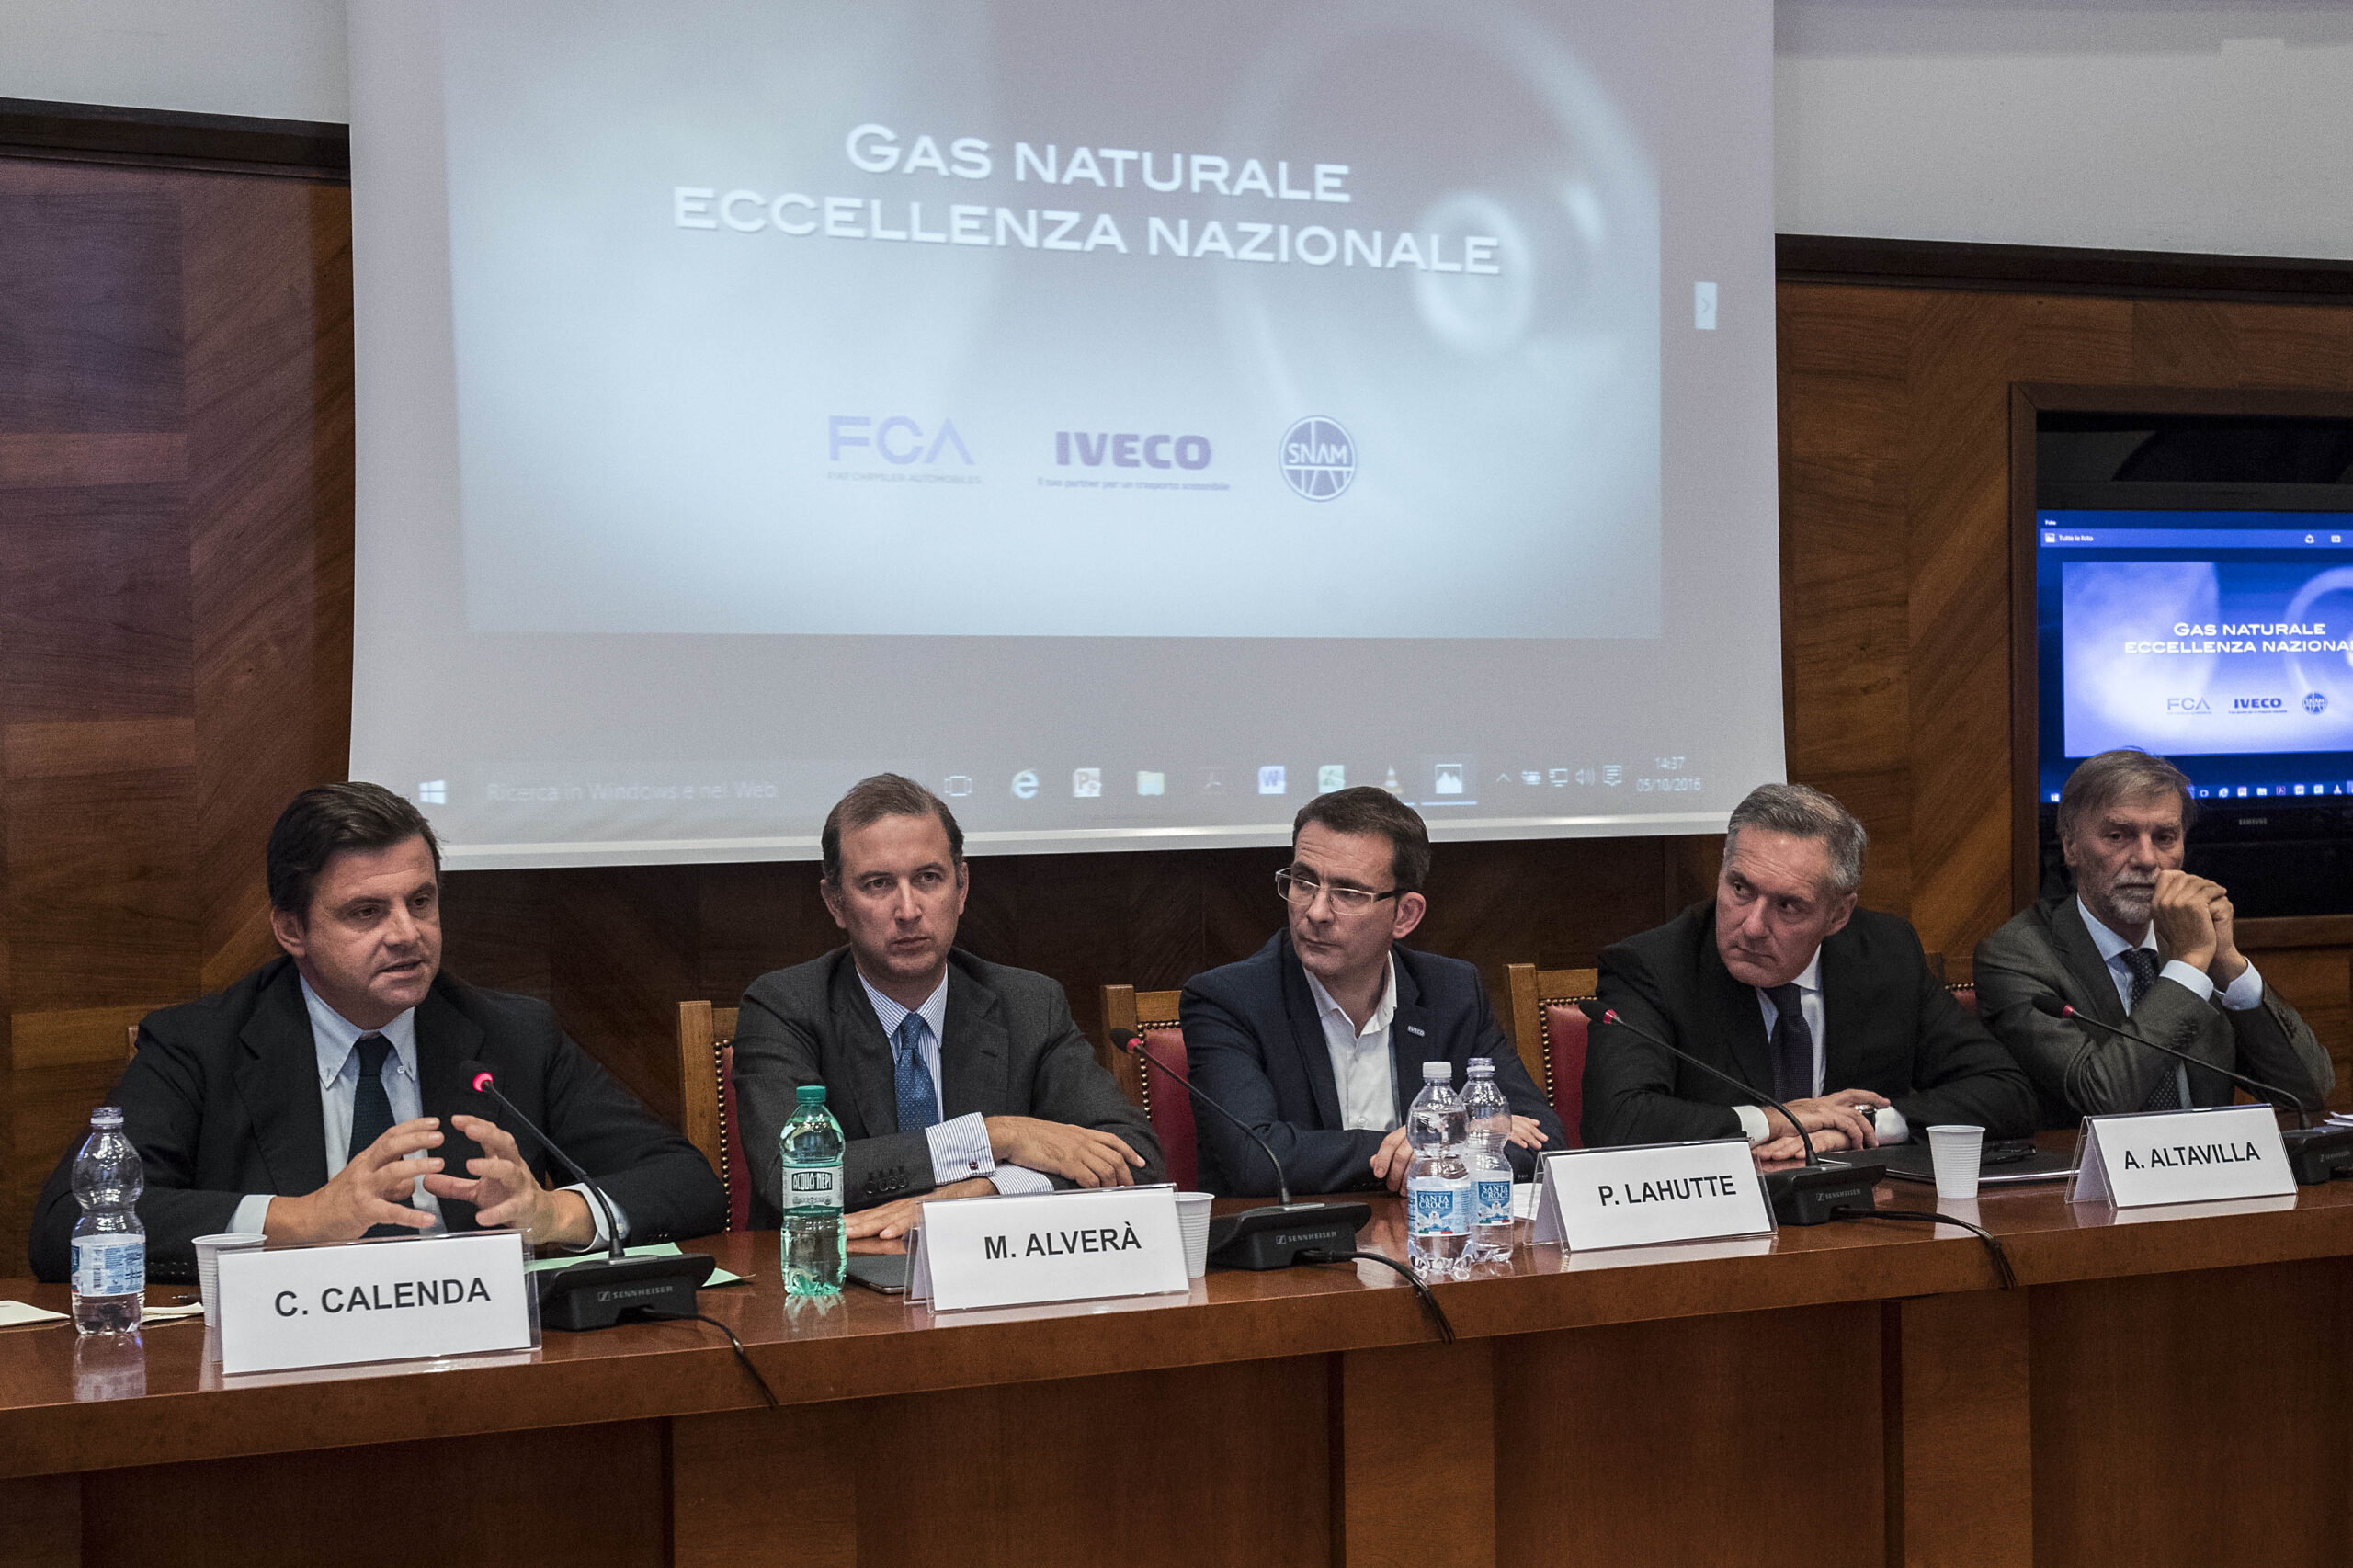 Iveco, FCA e Snam firmano accordo sul gas naturale (CNG)